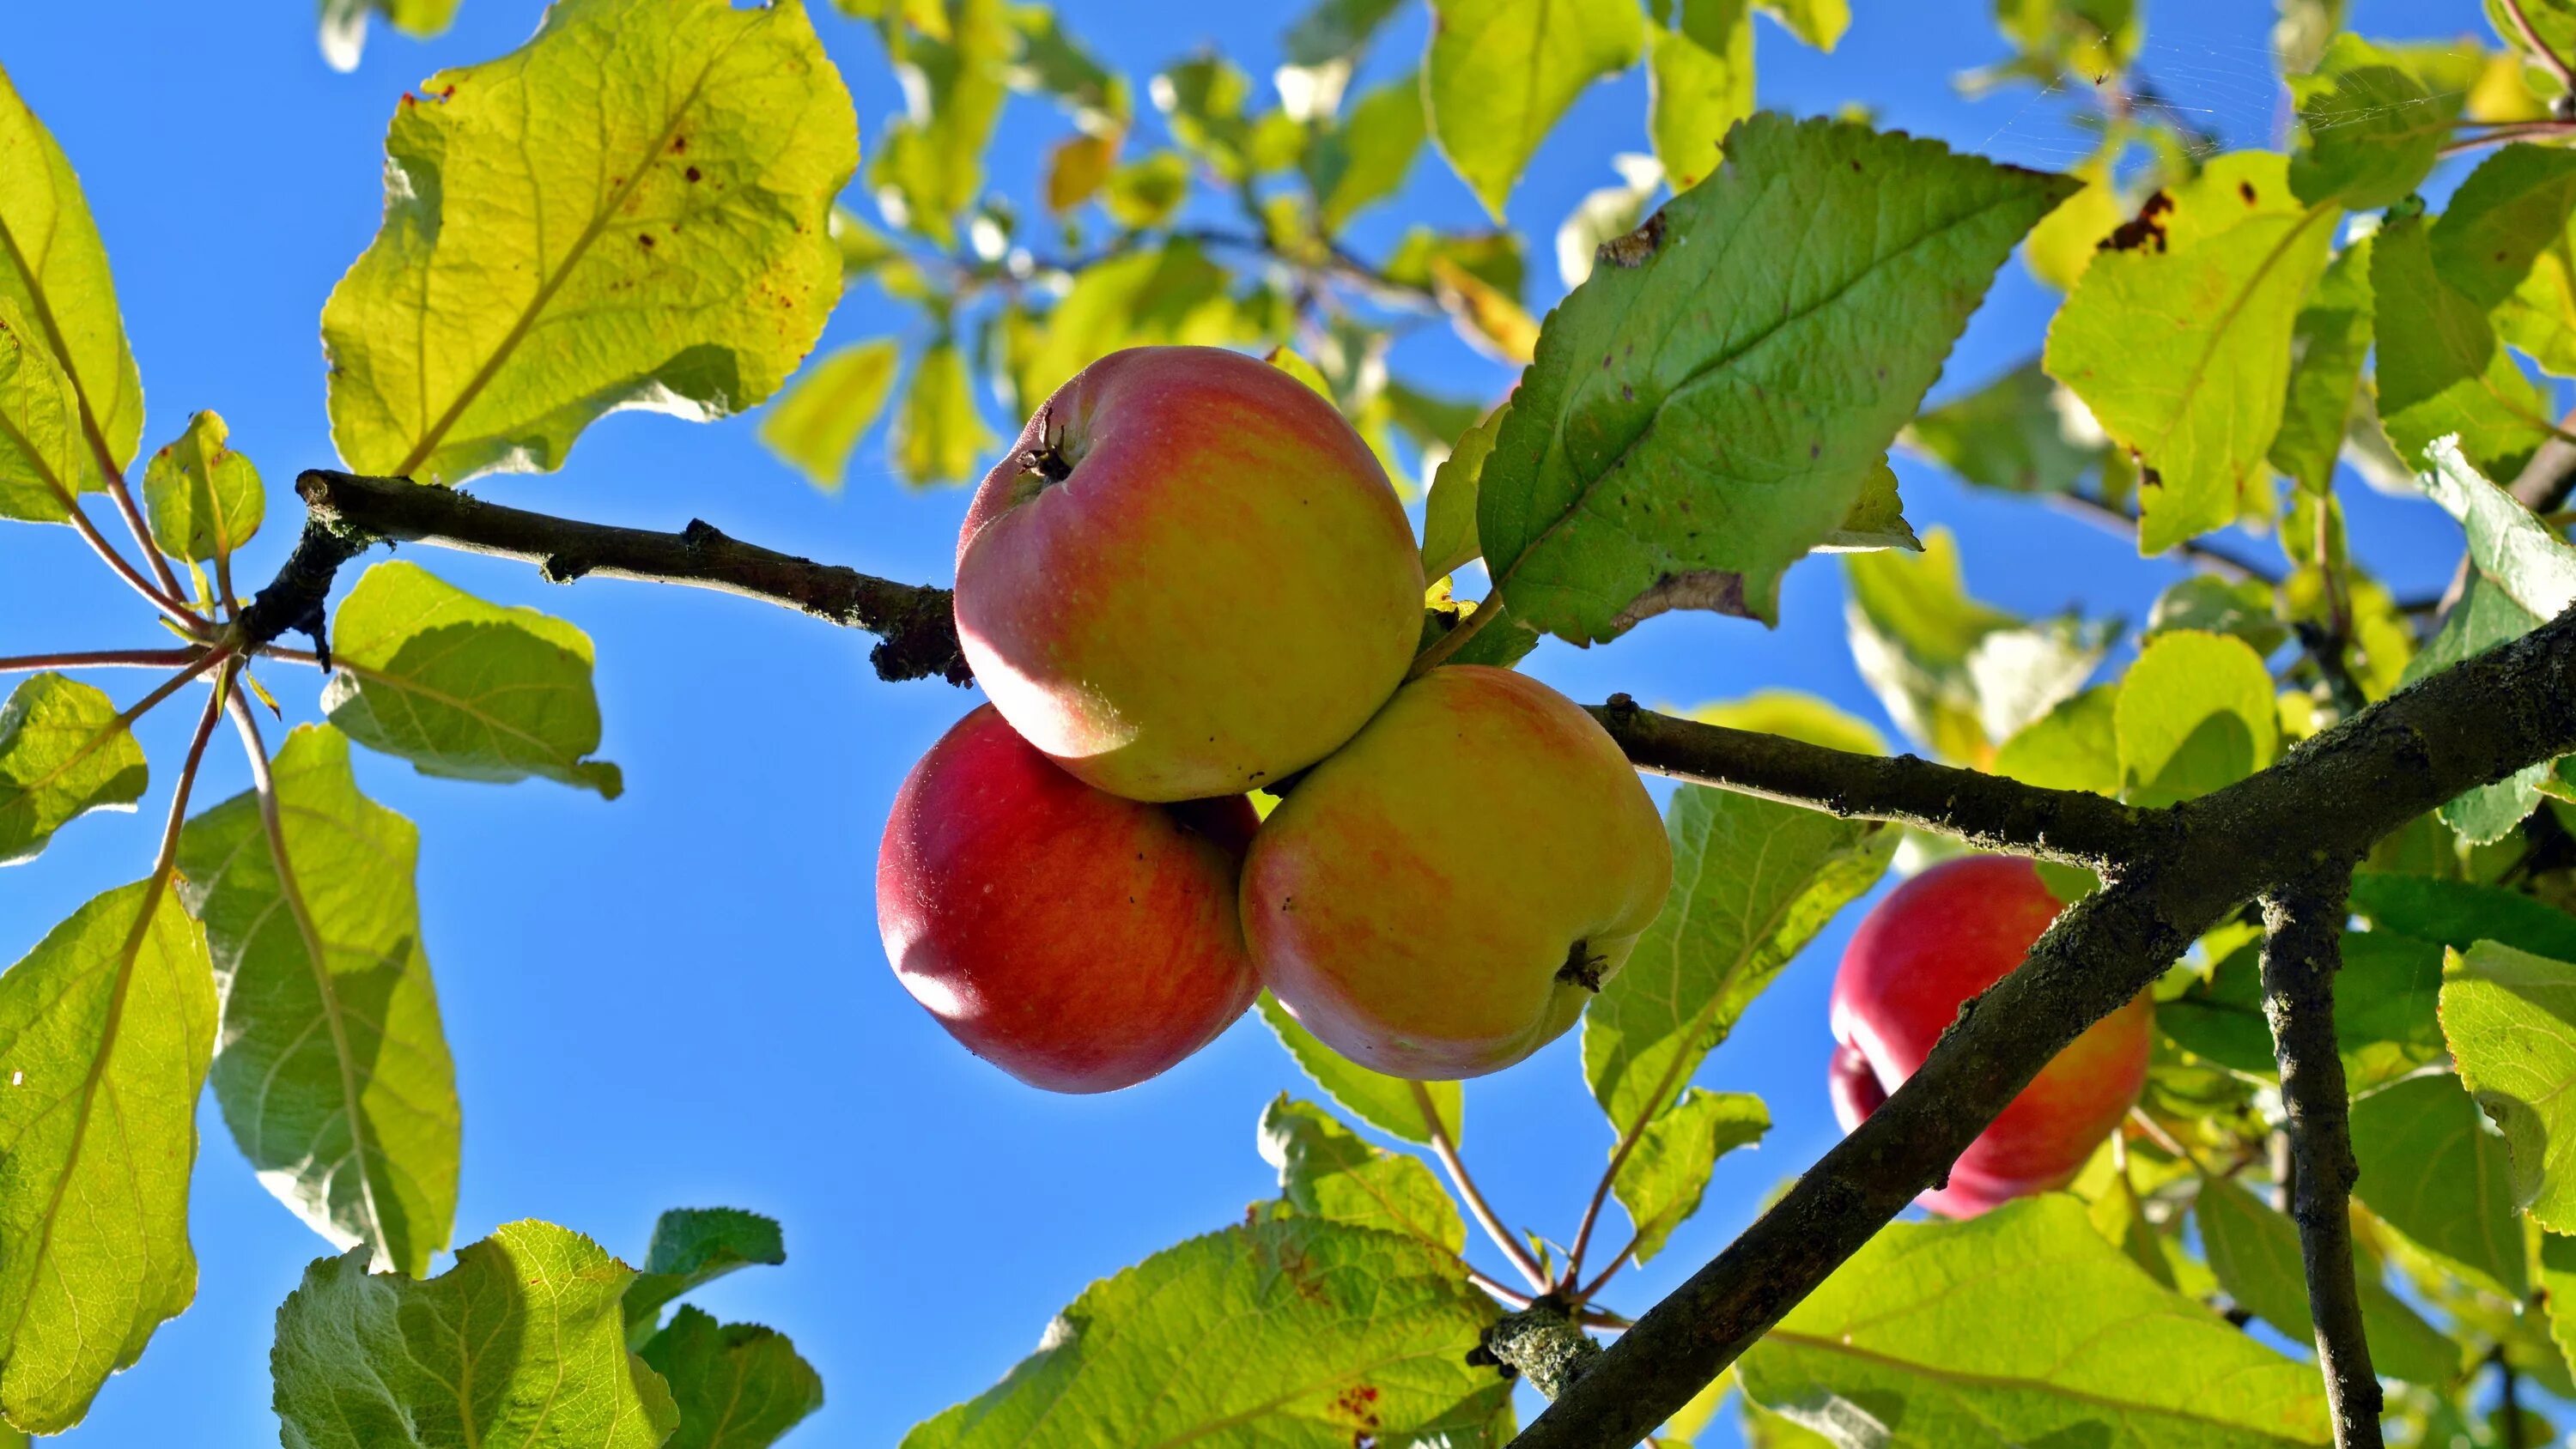 Яблоньки 2. Яблоня дерево. Яблоки на дереве. Яблоня с яблоками. Яблоня с красными яблоками.